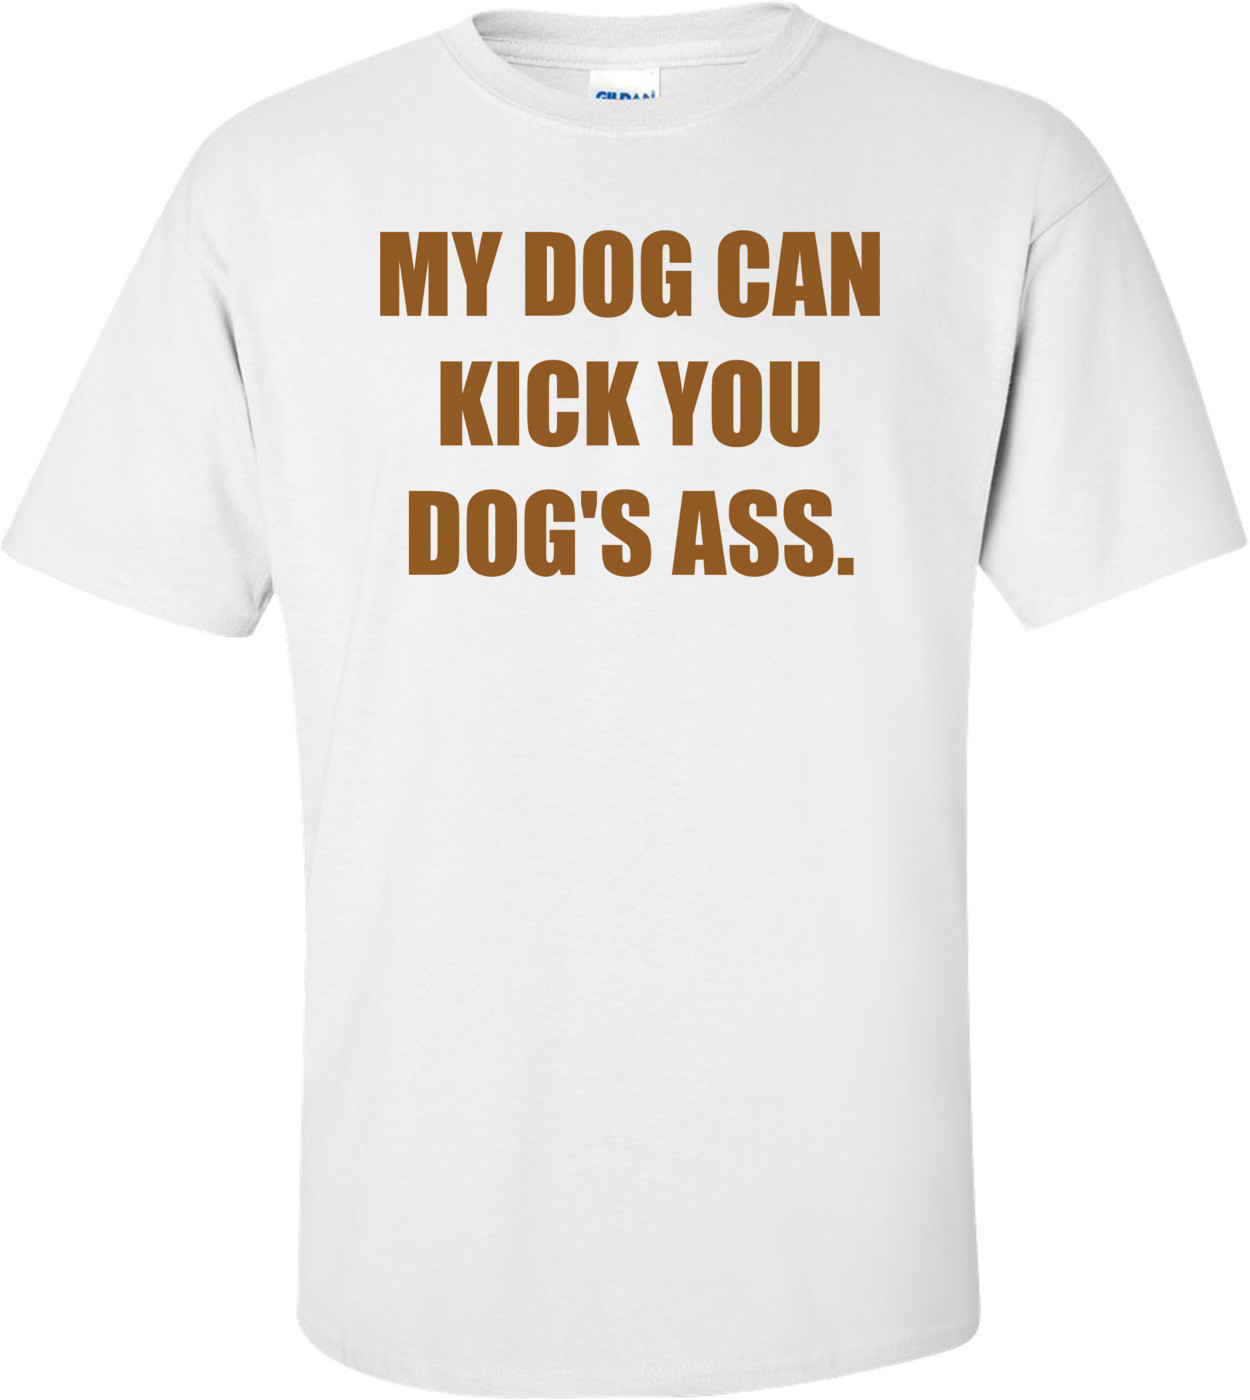 MY DOG CAN KICK YOU DOG'S ASS. Shirt